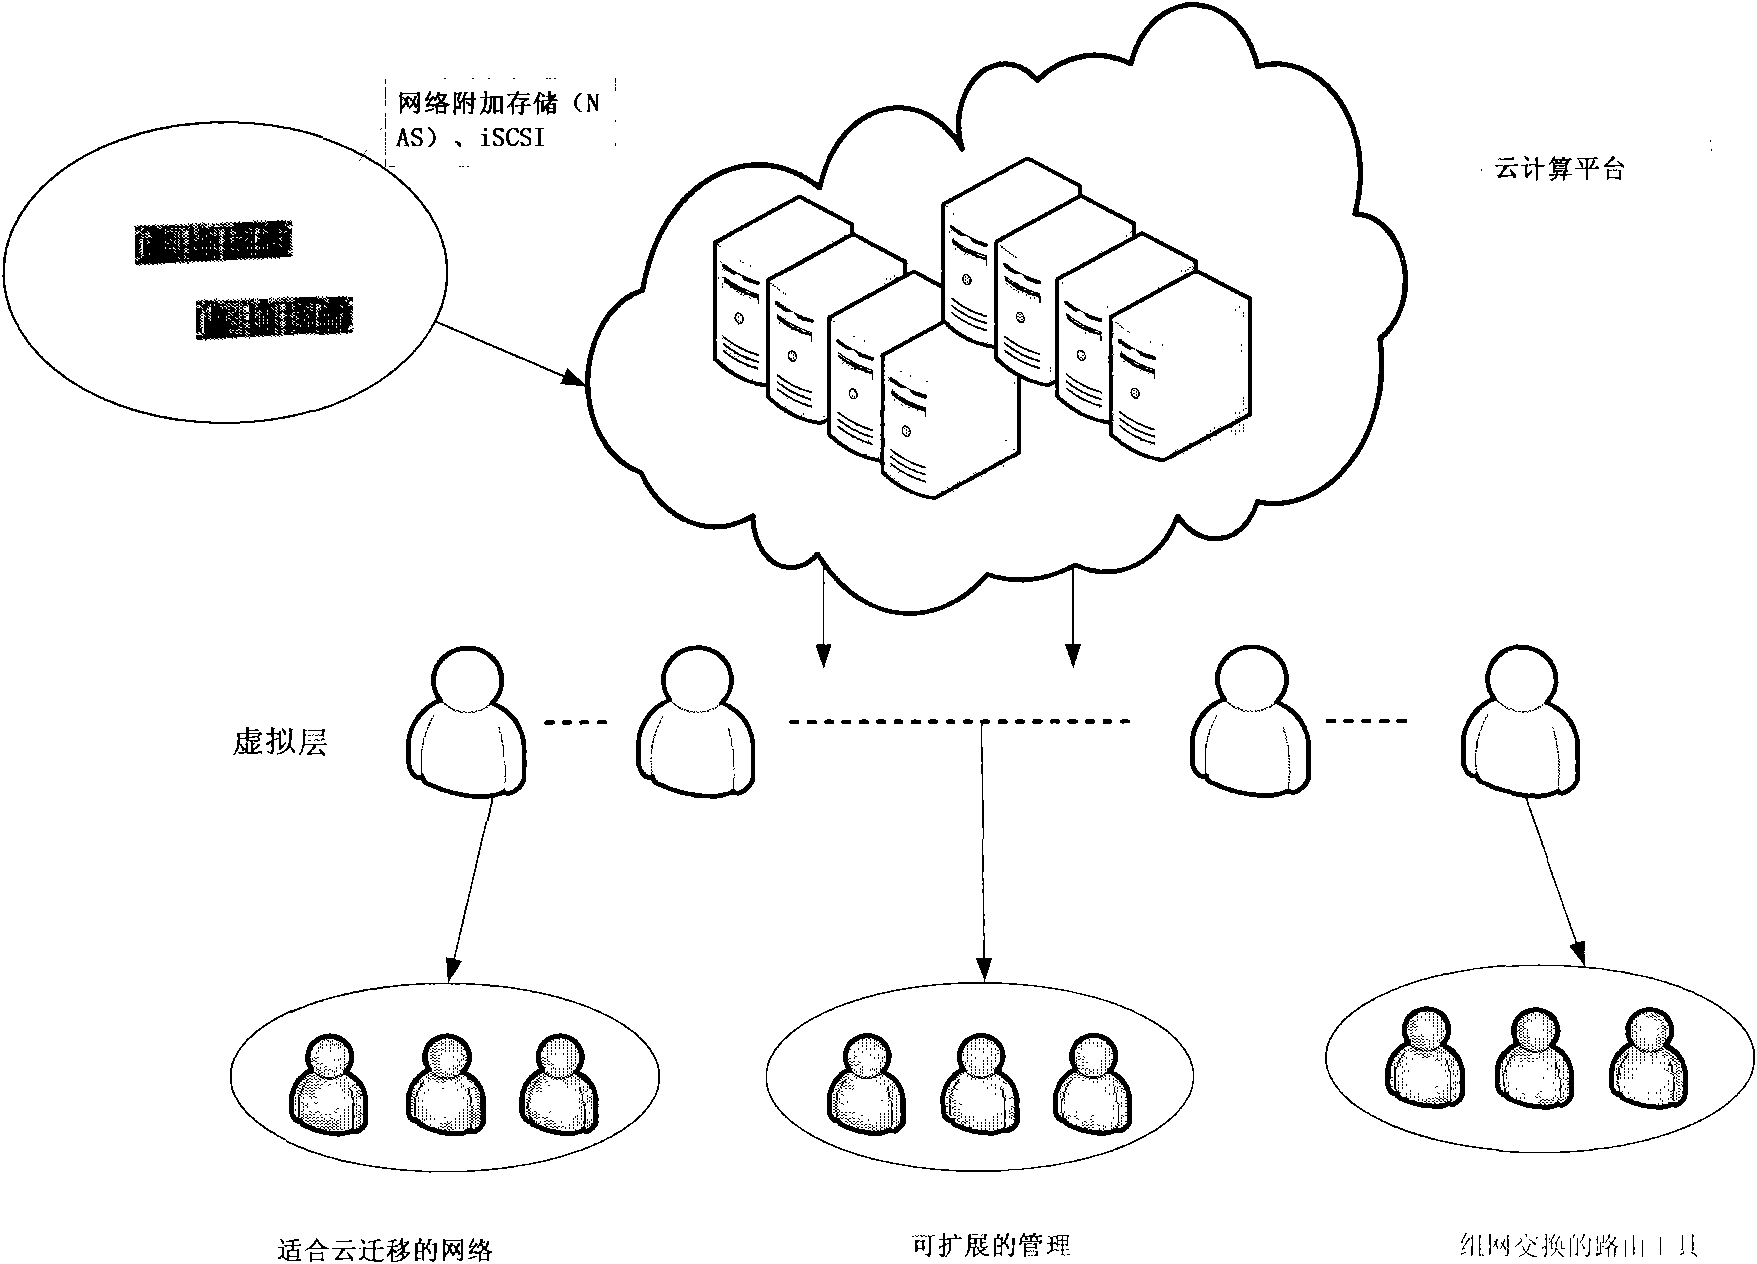 Exchange design of cloud computing network